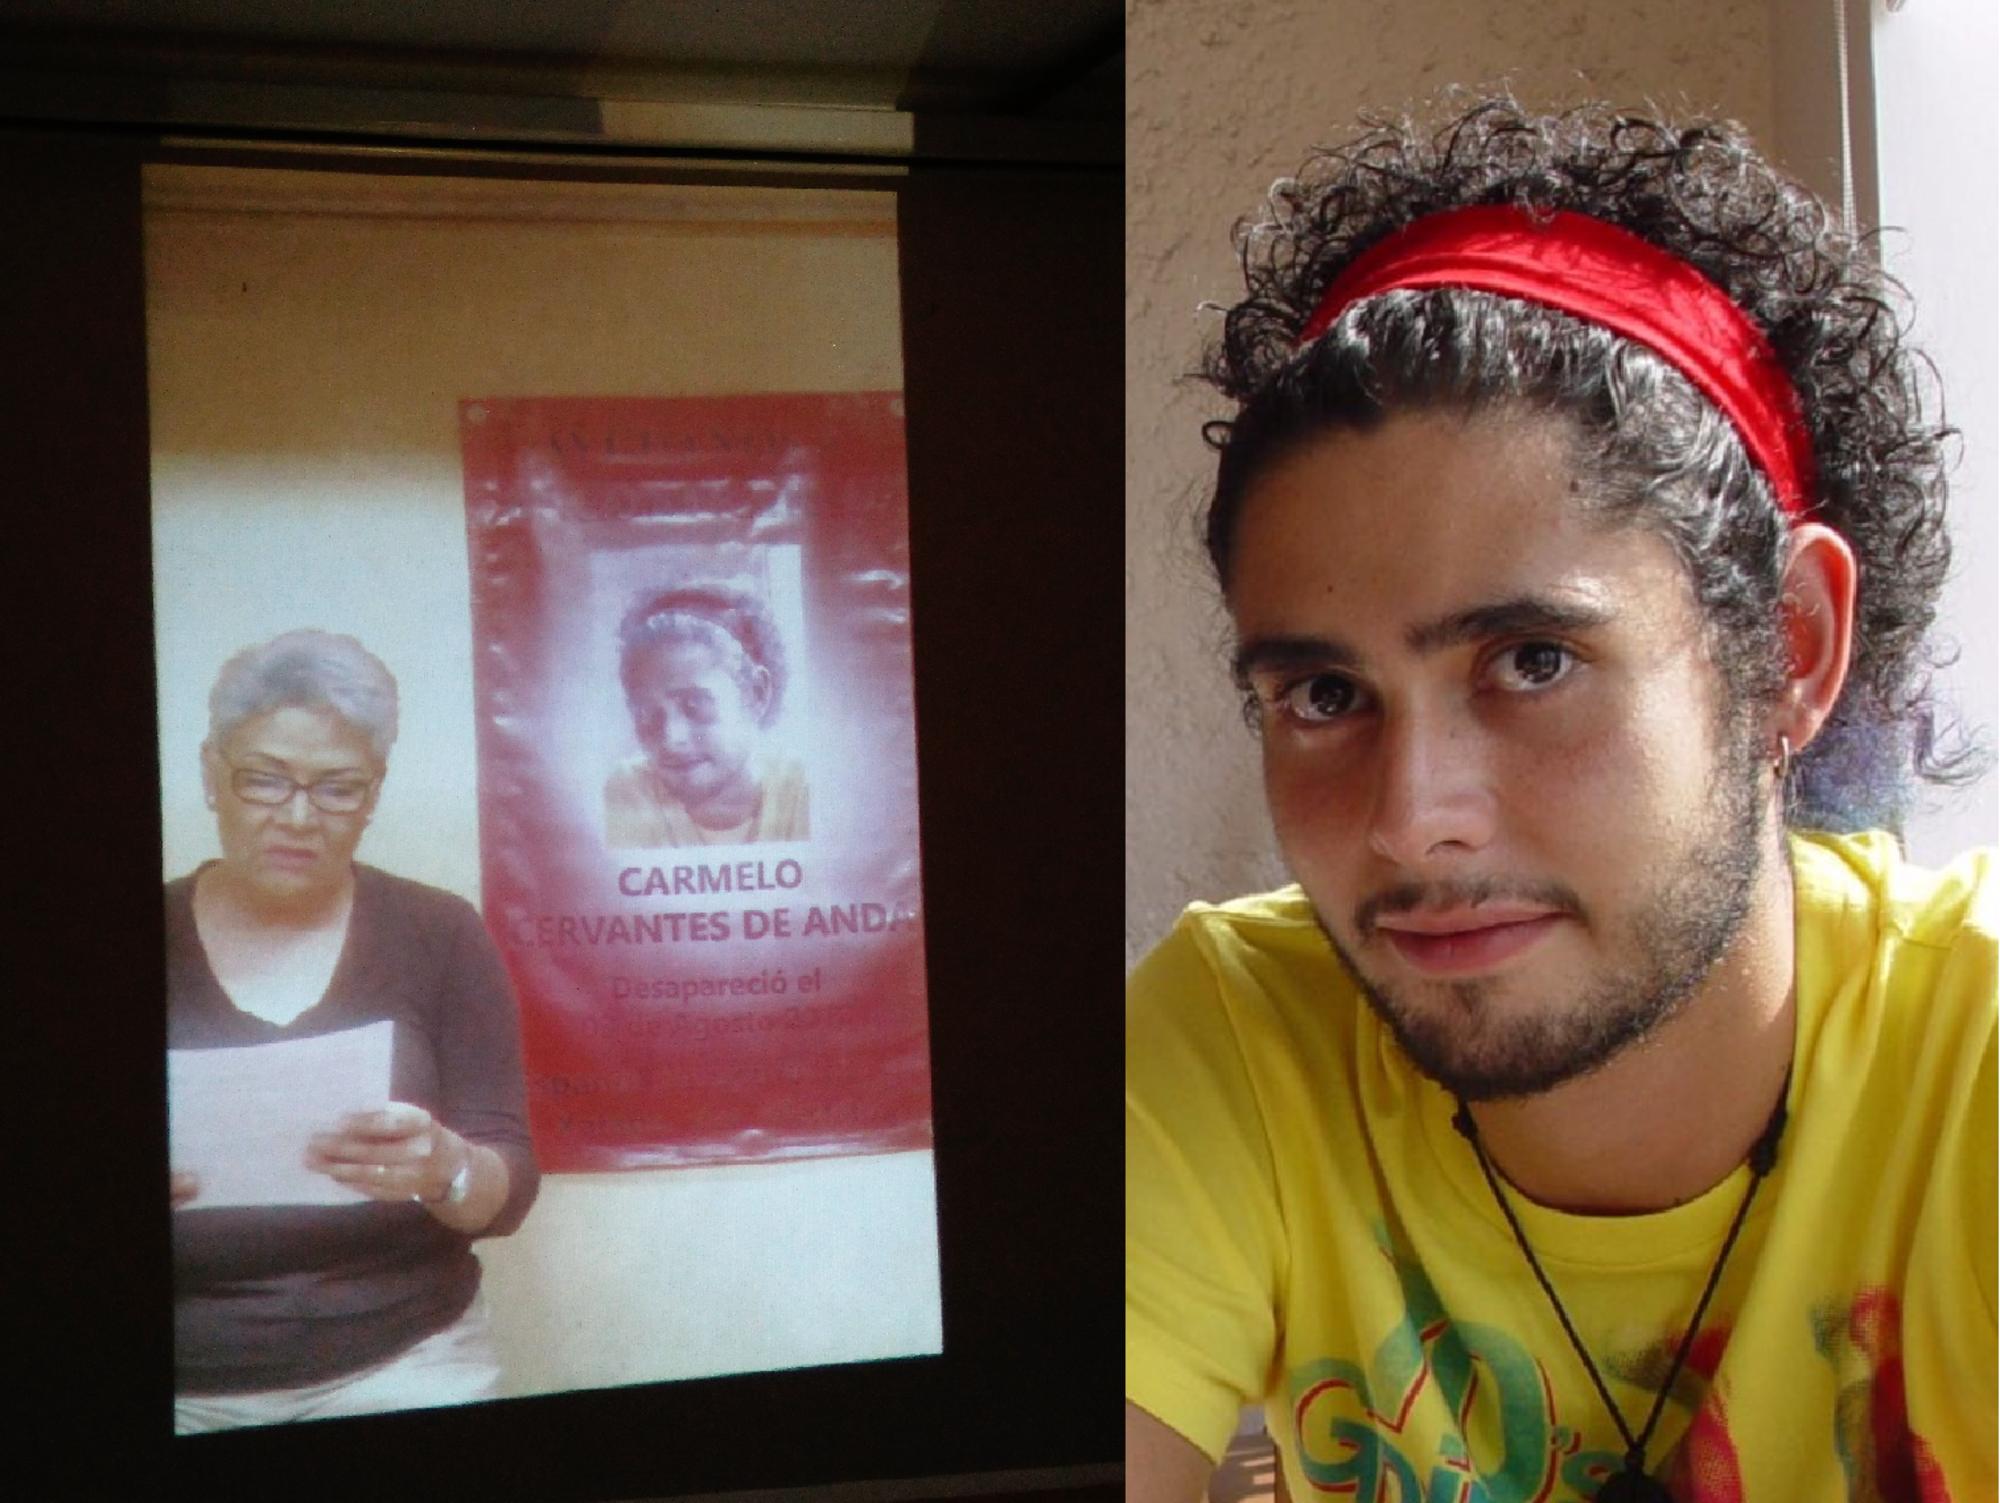 A la izq. Adela de Anda, miembro del colectivo El Solecito Veracruzano. A la dcha., Carmelo Cervantes de Anda, desaparecido en Xalapa, Veracruz en 2012